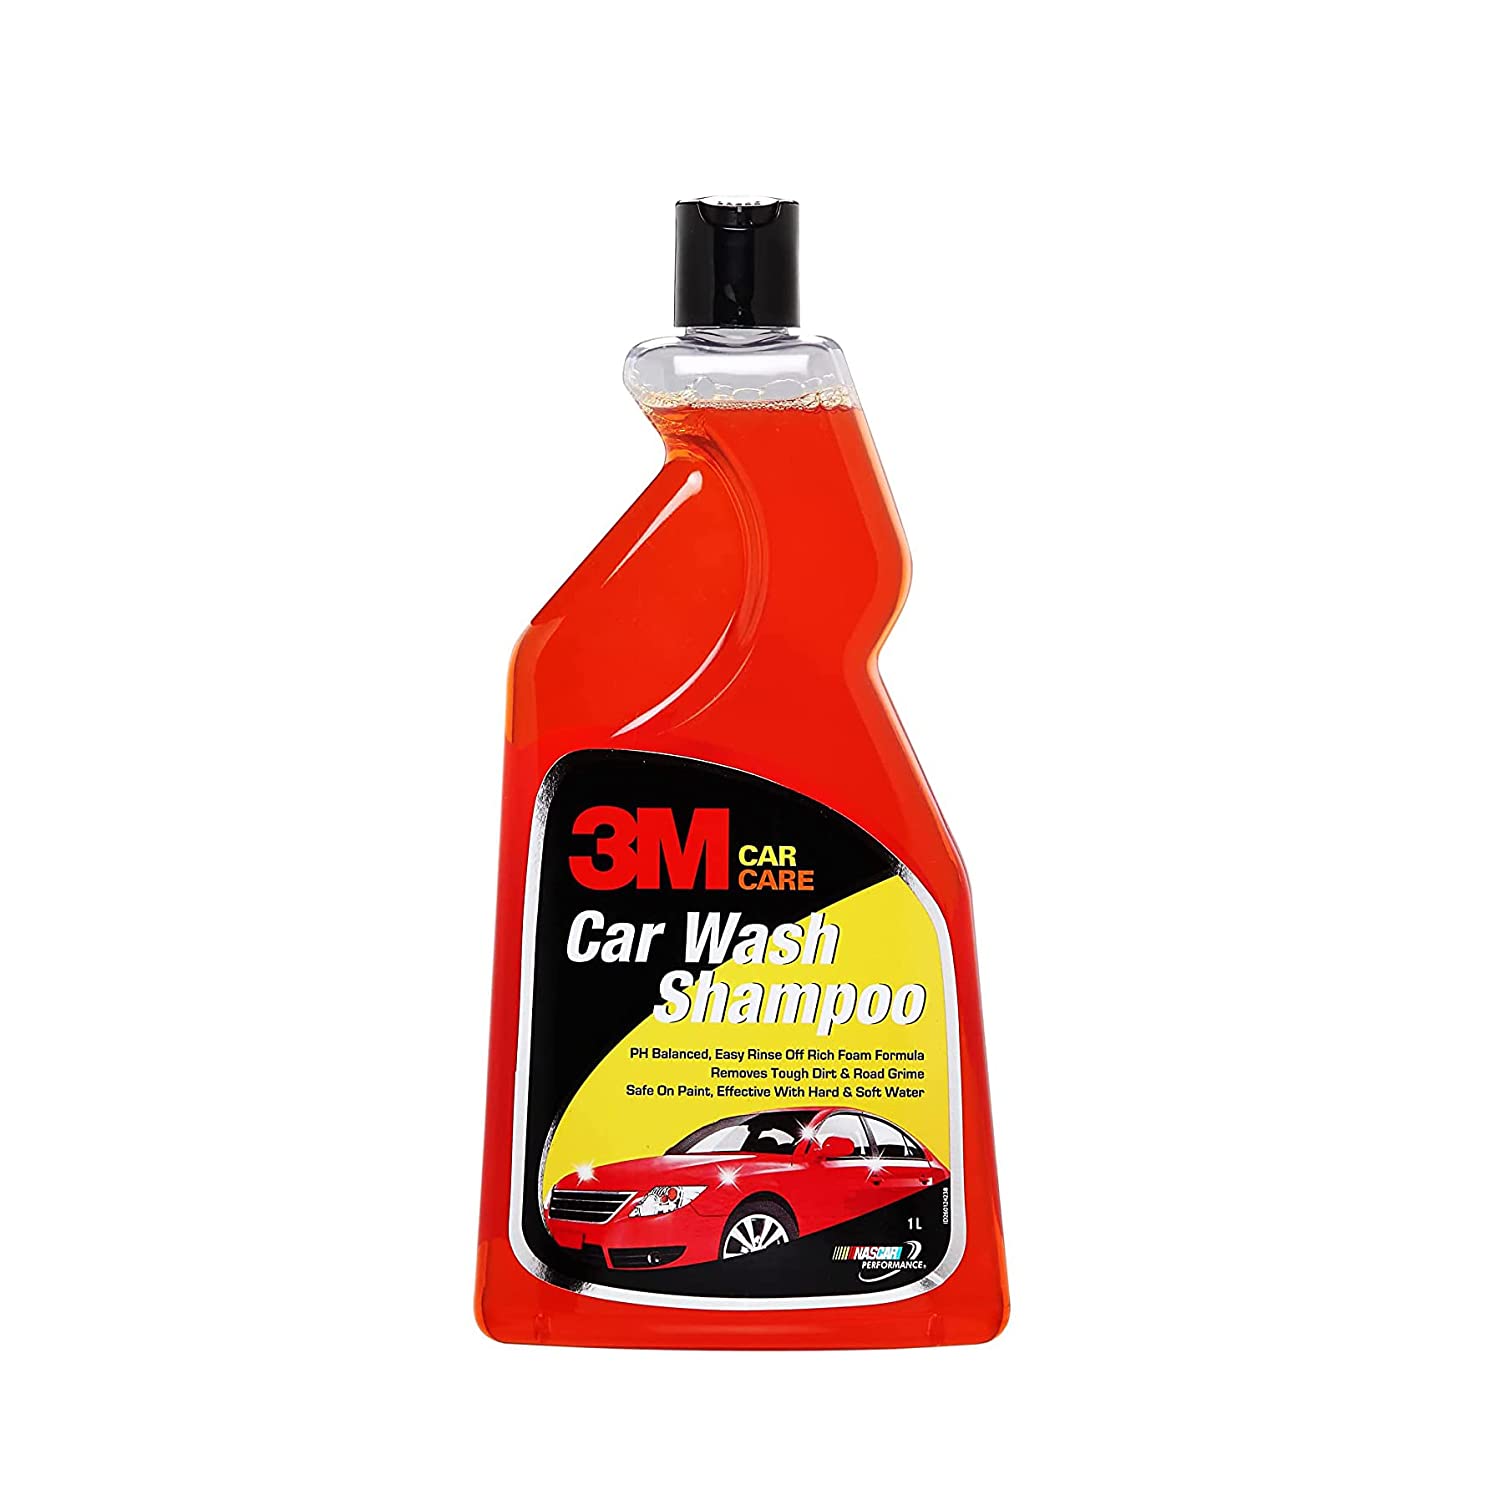 3M Car wash Shampoo (1L) | High Foam | Remove tough dirt | Safe on paint